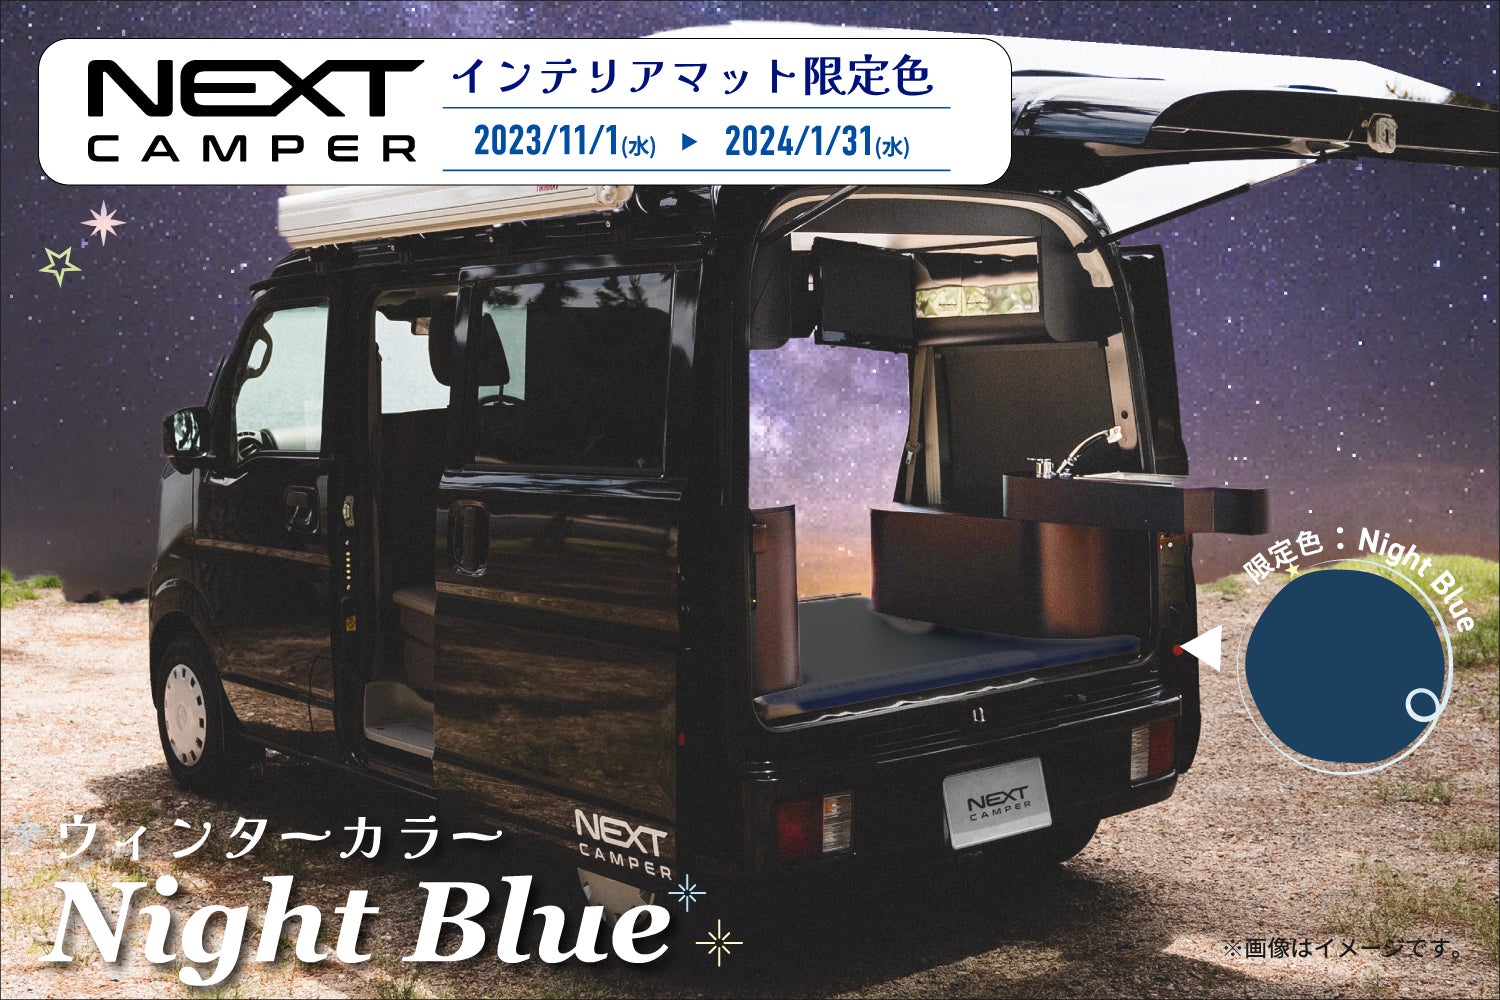 軽キャンピングカーキット「ネクストキャンパー」オプションマットに、特別ウィンターカラー「Night Blue＜ナイトブルー＞」が期間限定で登場！